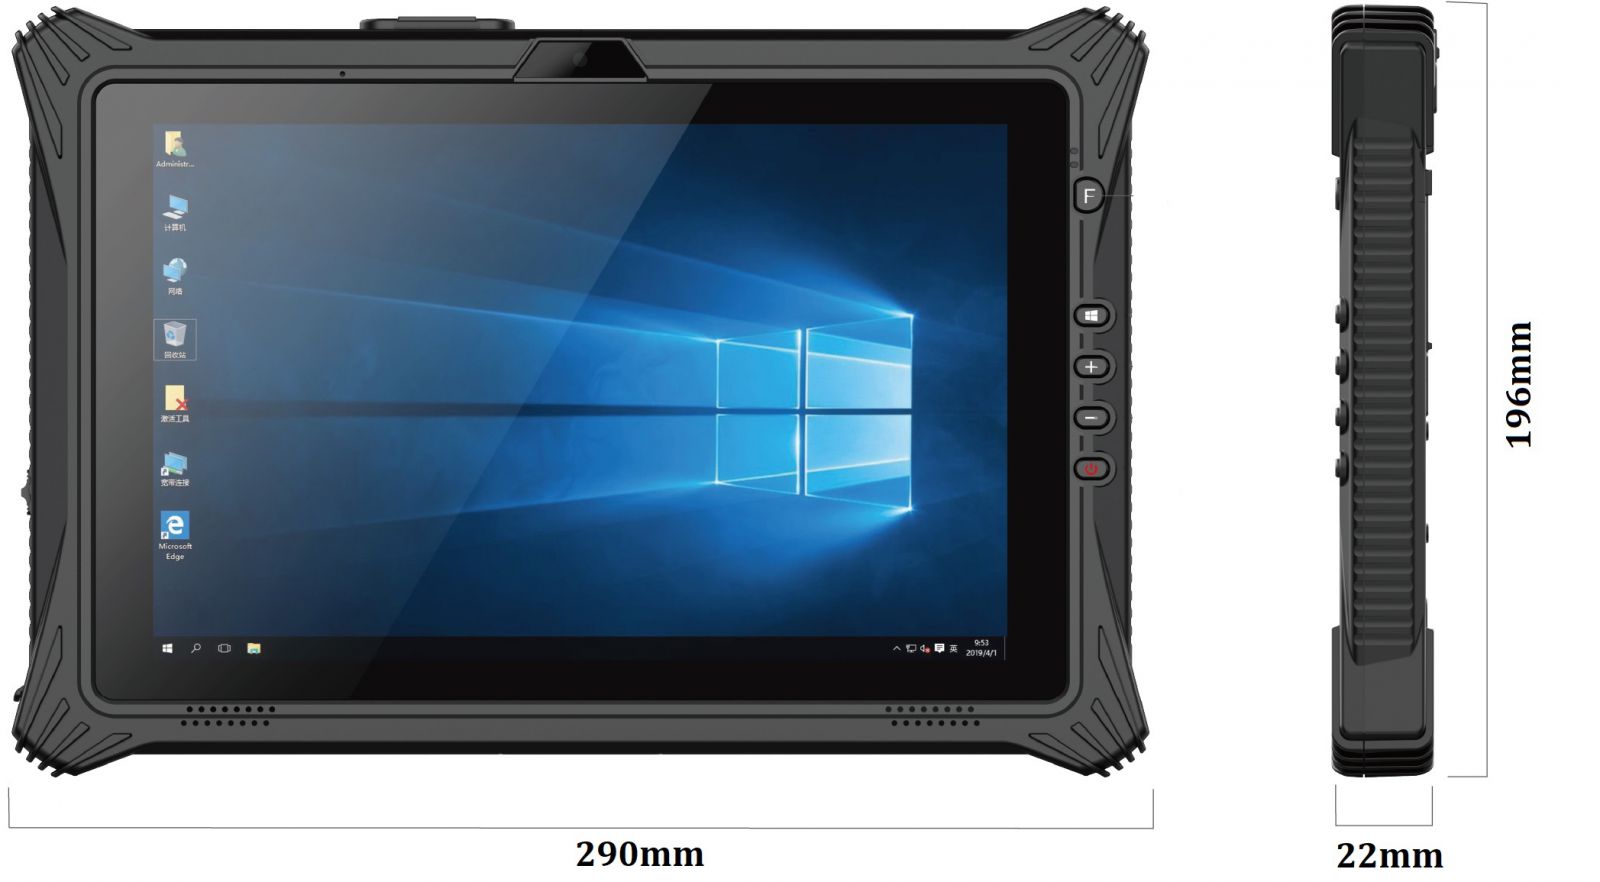 Emdoor I10U v.4 - Odporny na upadki dziesiciocalowy tablet z Windows 10 Home, BT 4.2, 8GB RAM, dyskiem 128GB, NFC  i 4G 